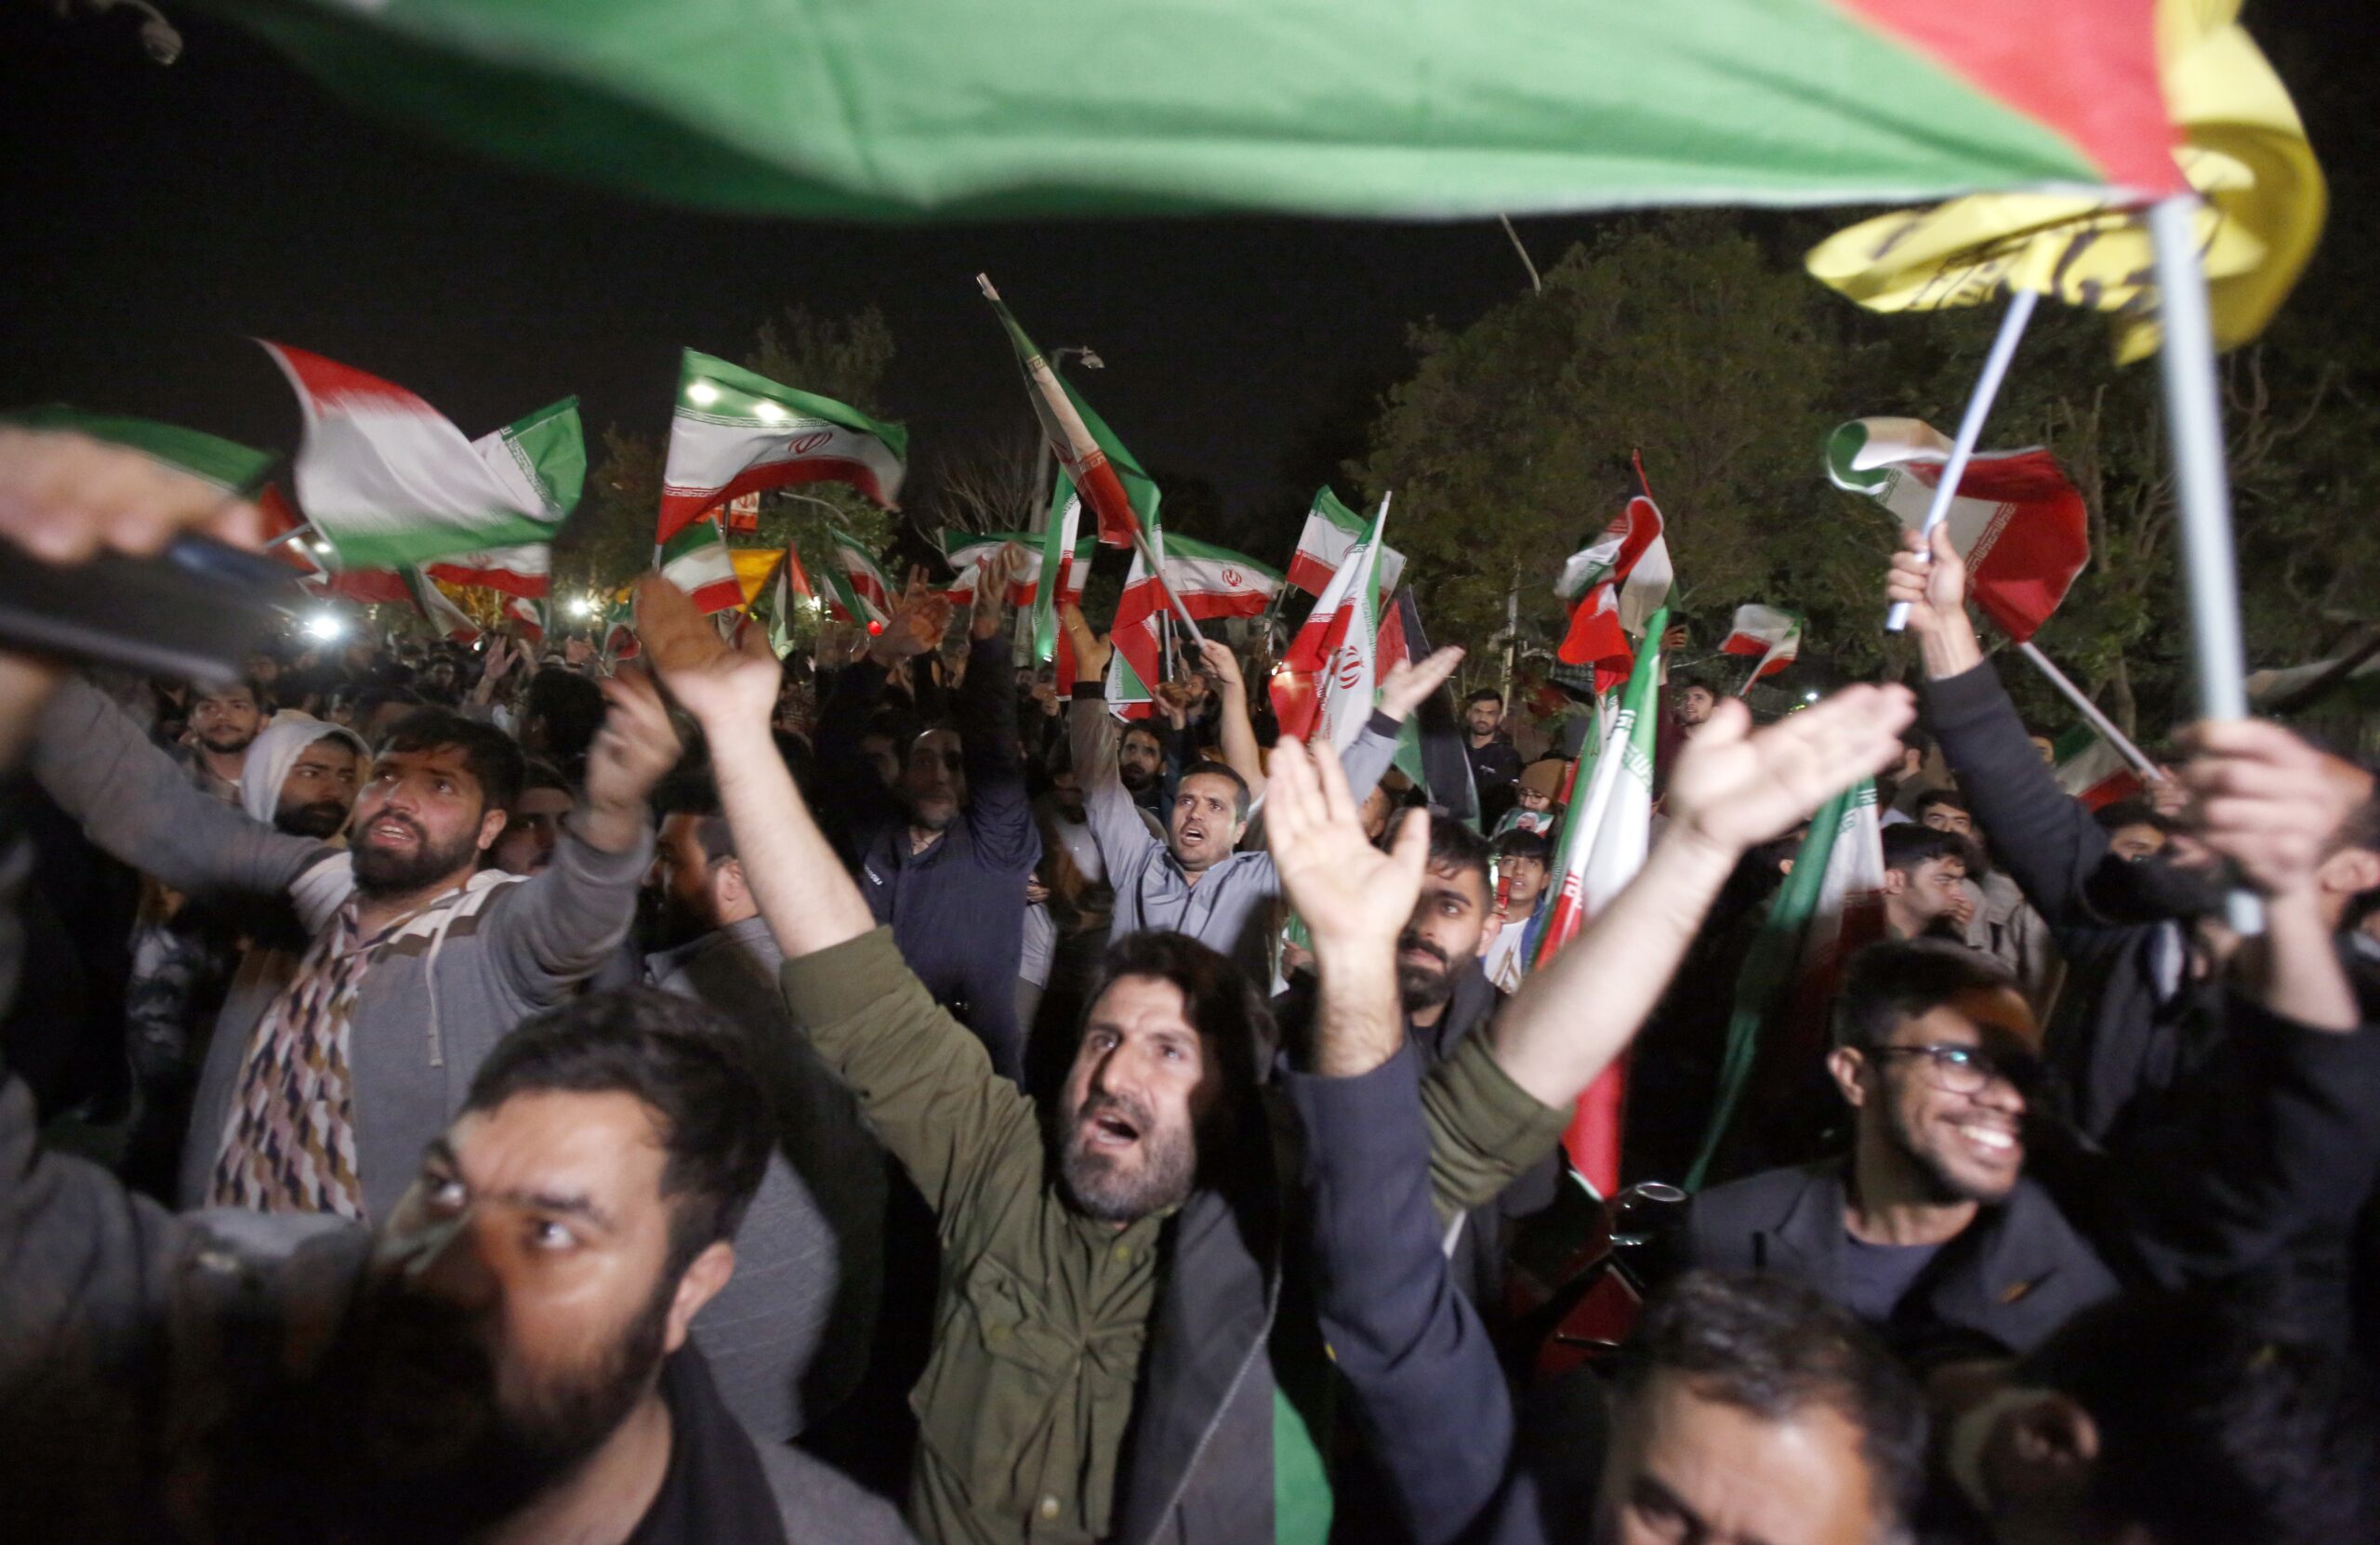 Iraniërs vieren de lancering van de drones richting Israël, voor de Britse ambassade in de hoofdstad Tehran.  